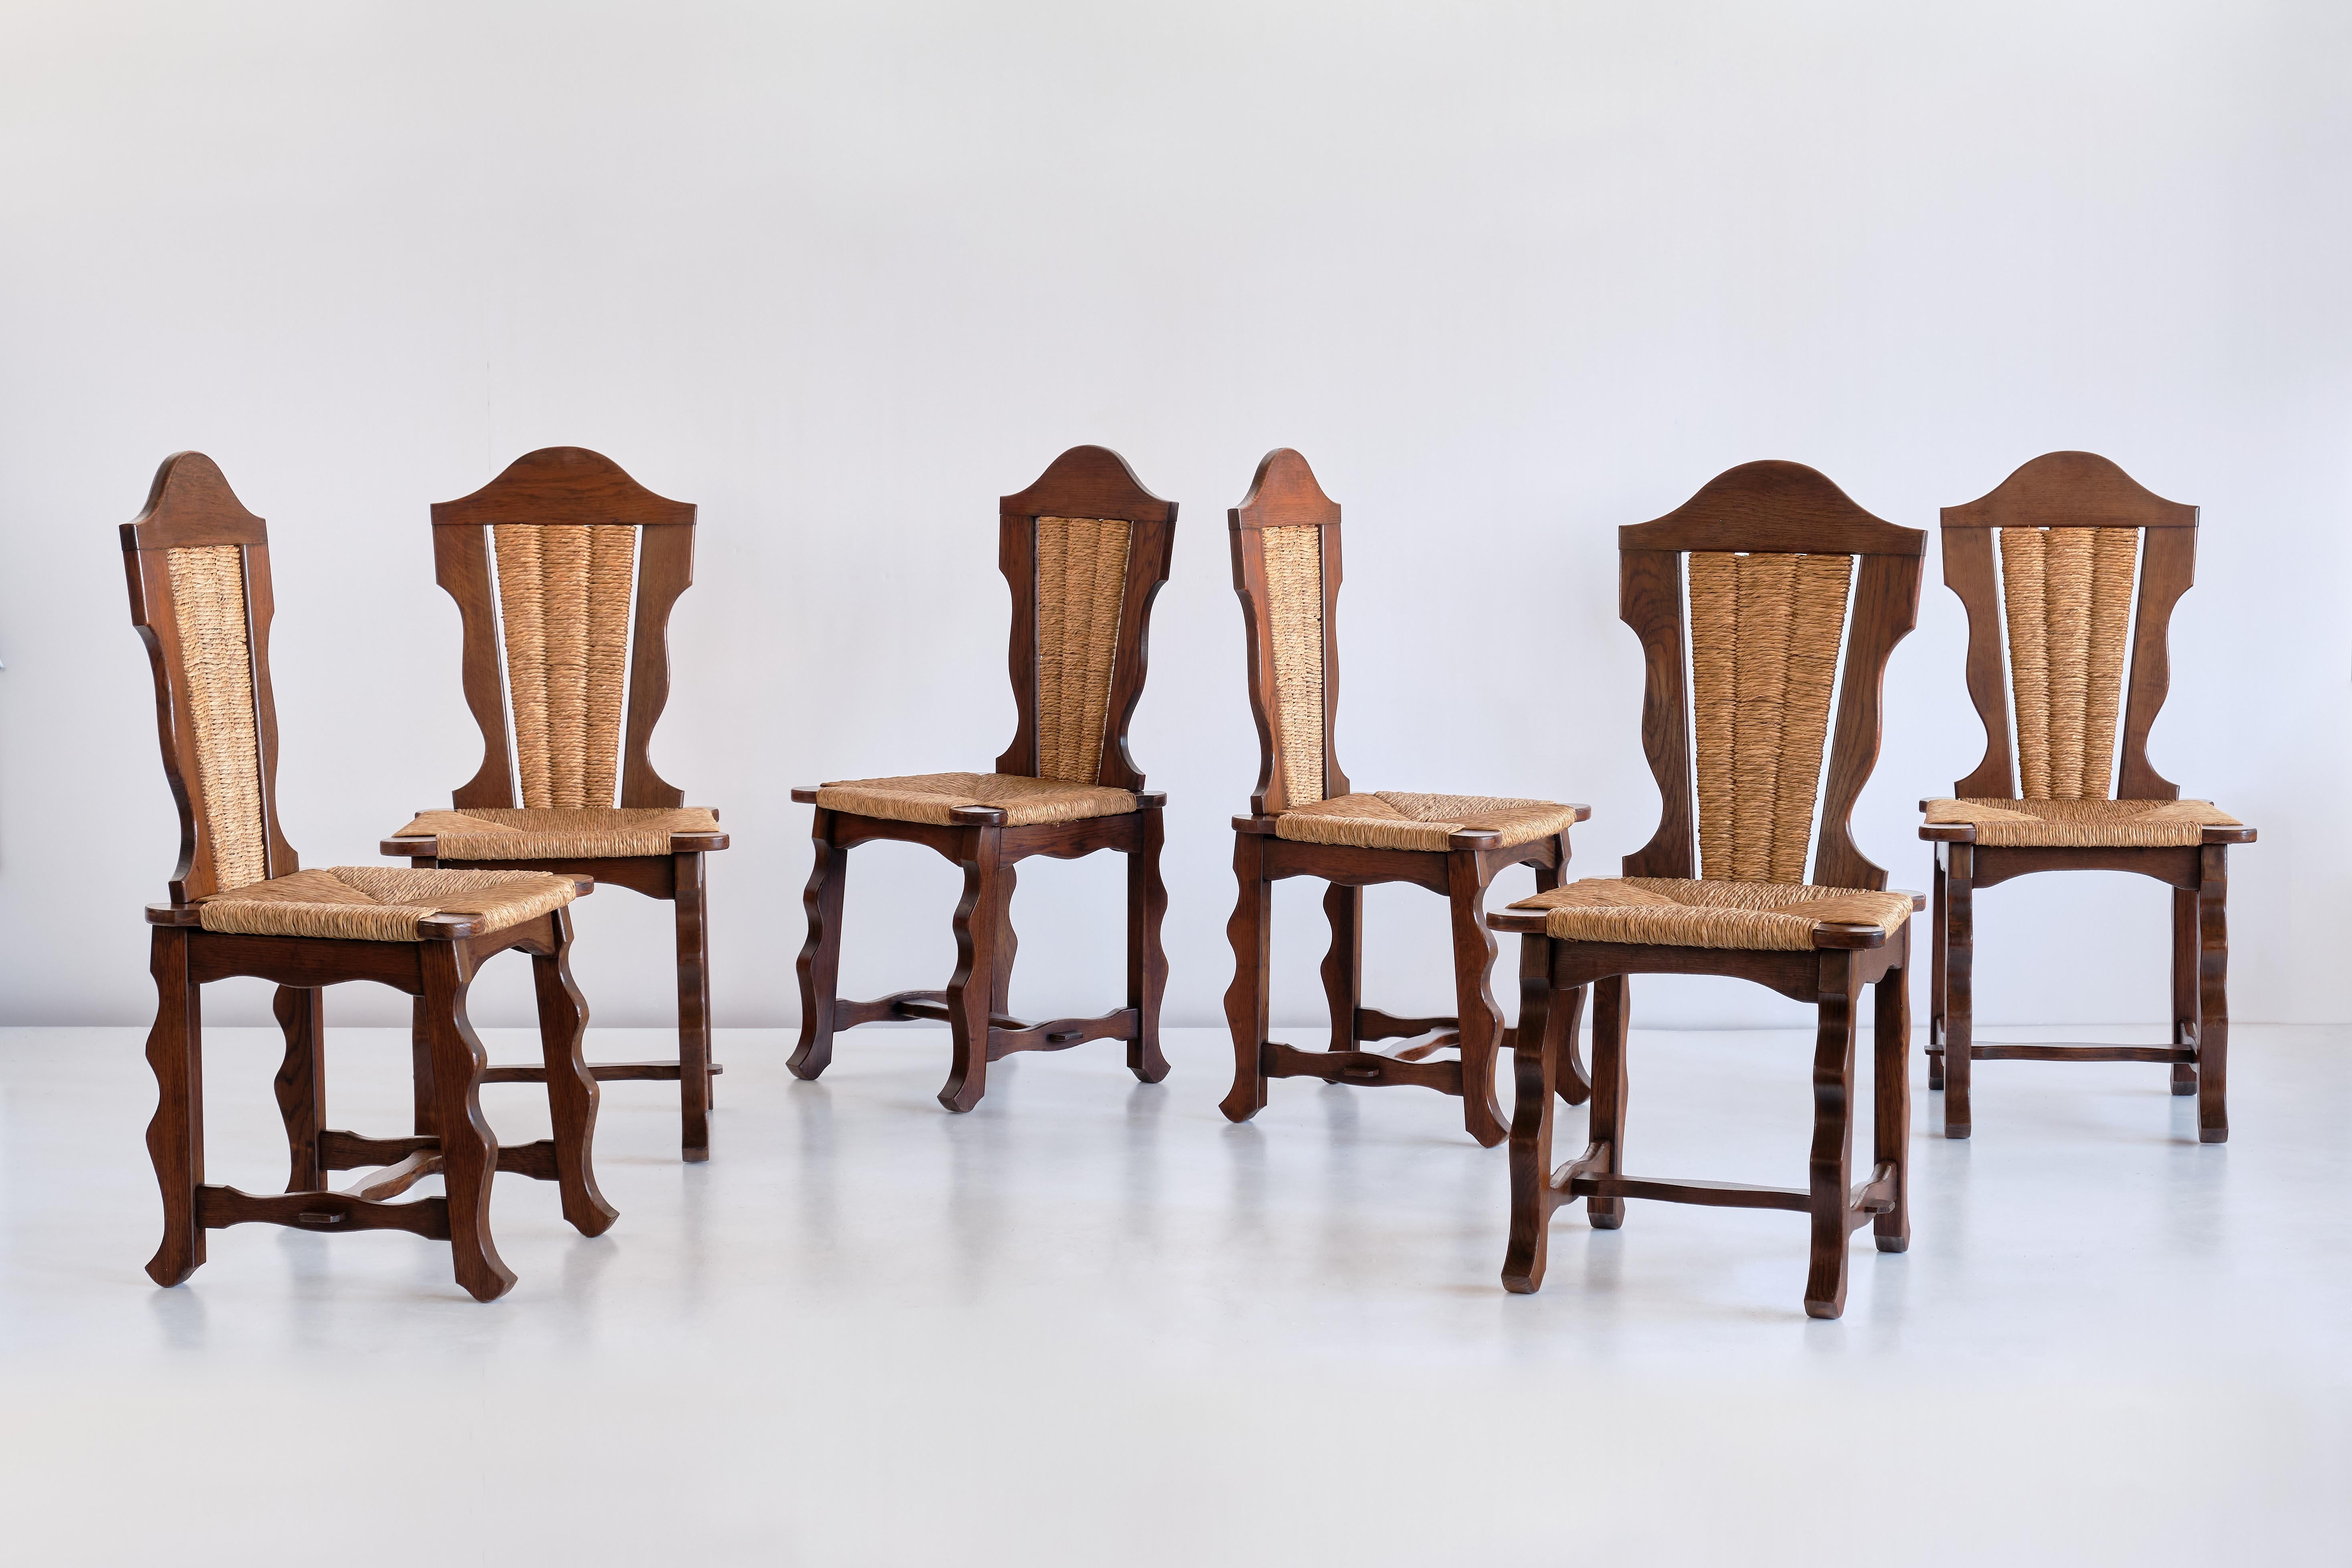 Ce remarquable ensemble de six chaises de salle à manger a été produit dans la région du nord du Pays basque, autour de la ville de Biarritz, dans les années 1950. Le dessin est attribué à Victor Courtray.
Les chaises sont en chêne massif teinté,